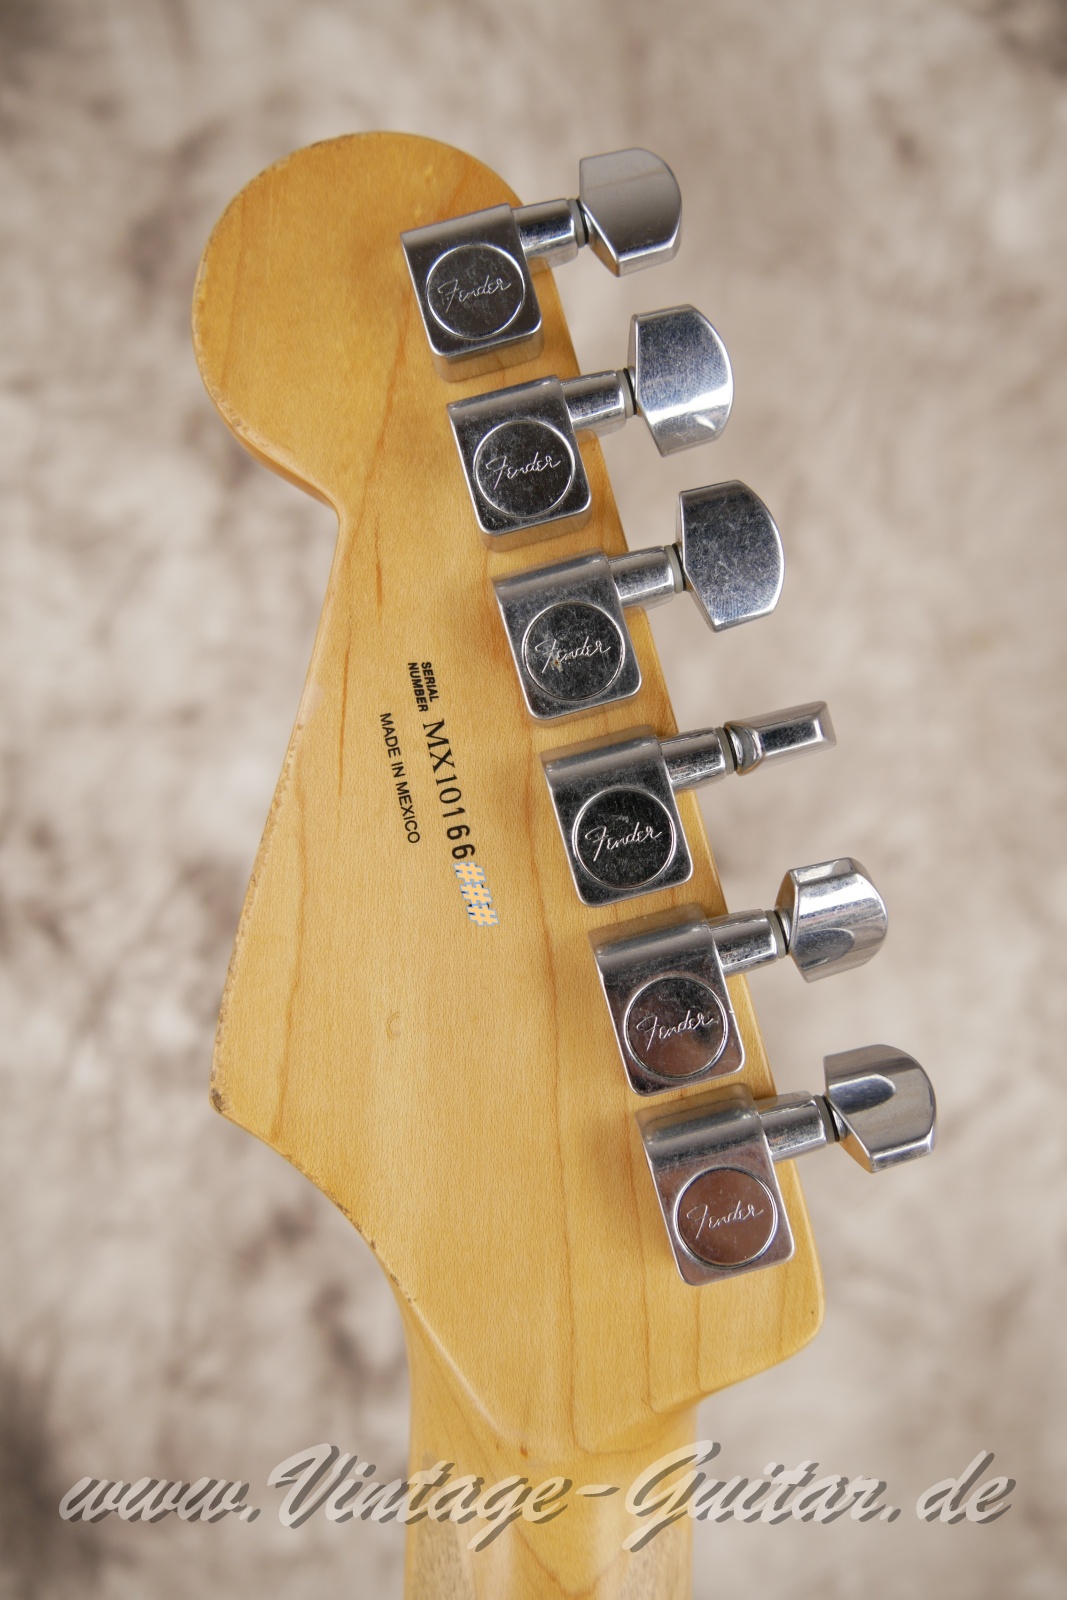 img/vintage/5656/Fender-Stratocaster-roadworn-player-series-60s-reissue-2011-olympic-white-004.jpg